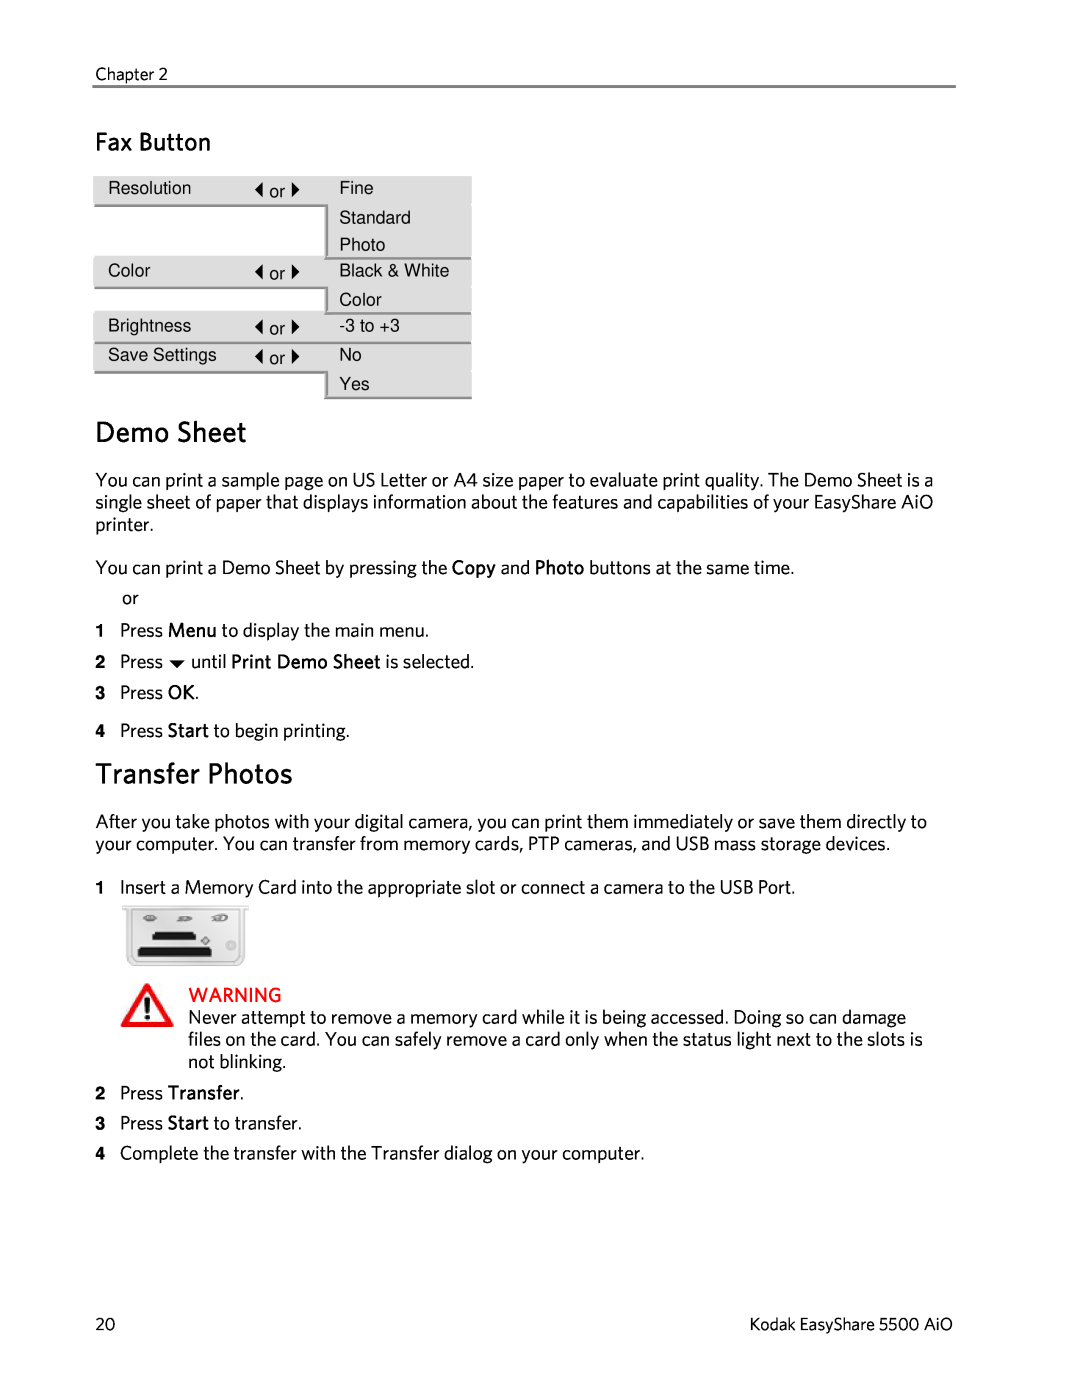 Kodak 5500 manual Demo Sheet, Transfer Photos, Fax Button 